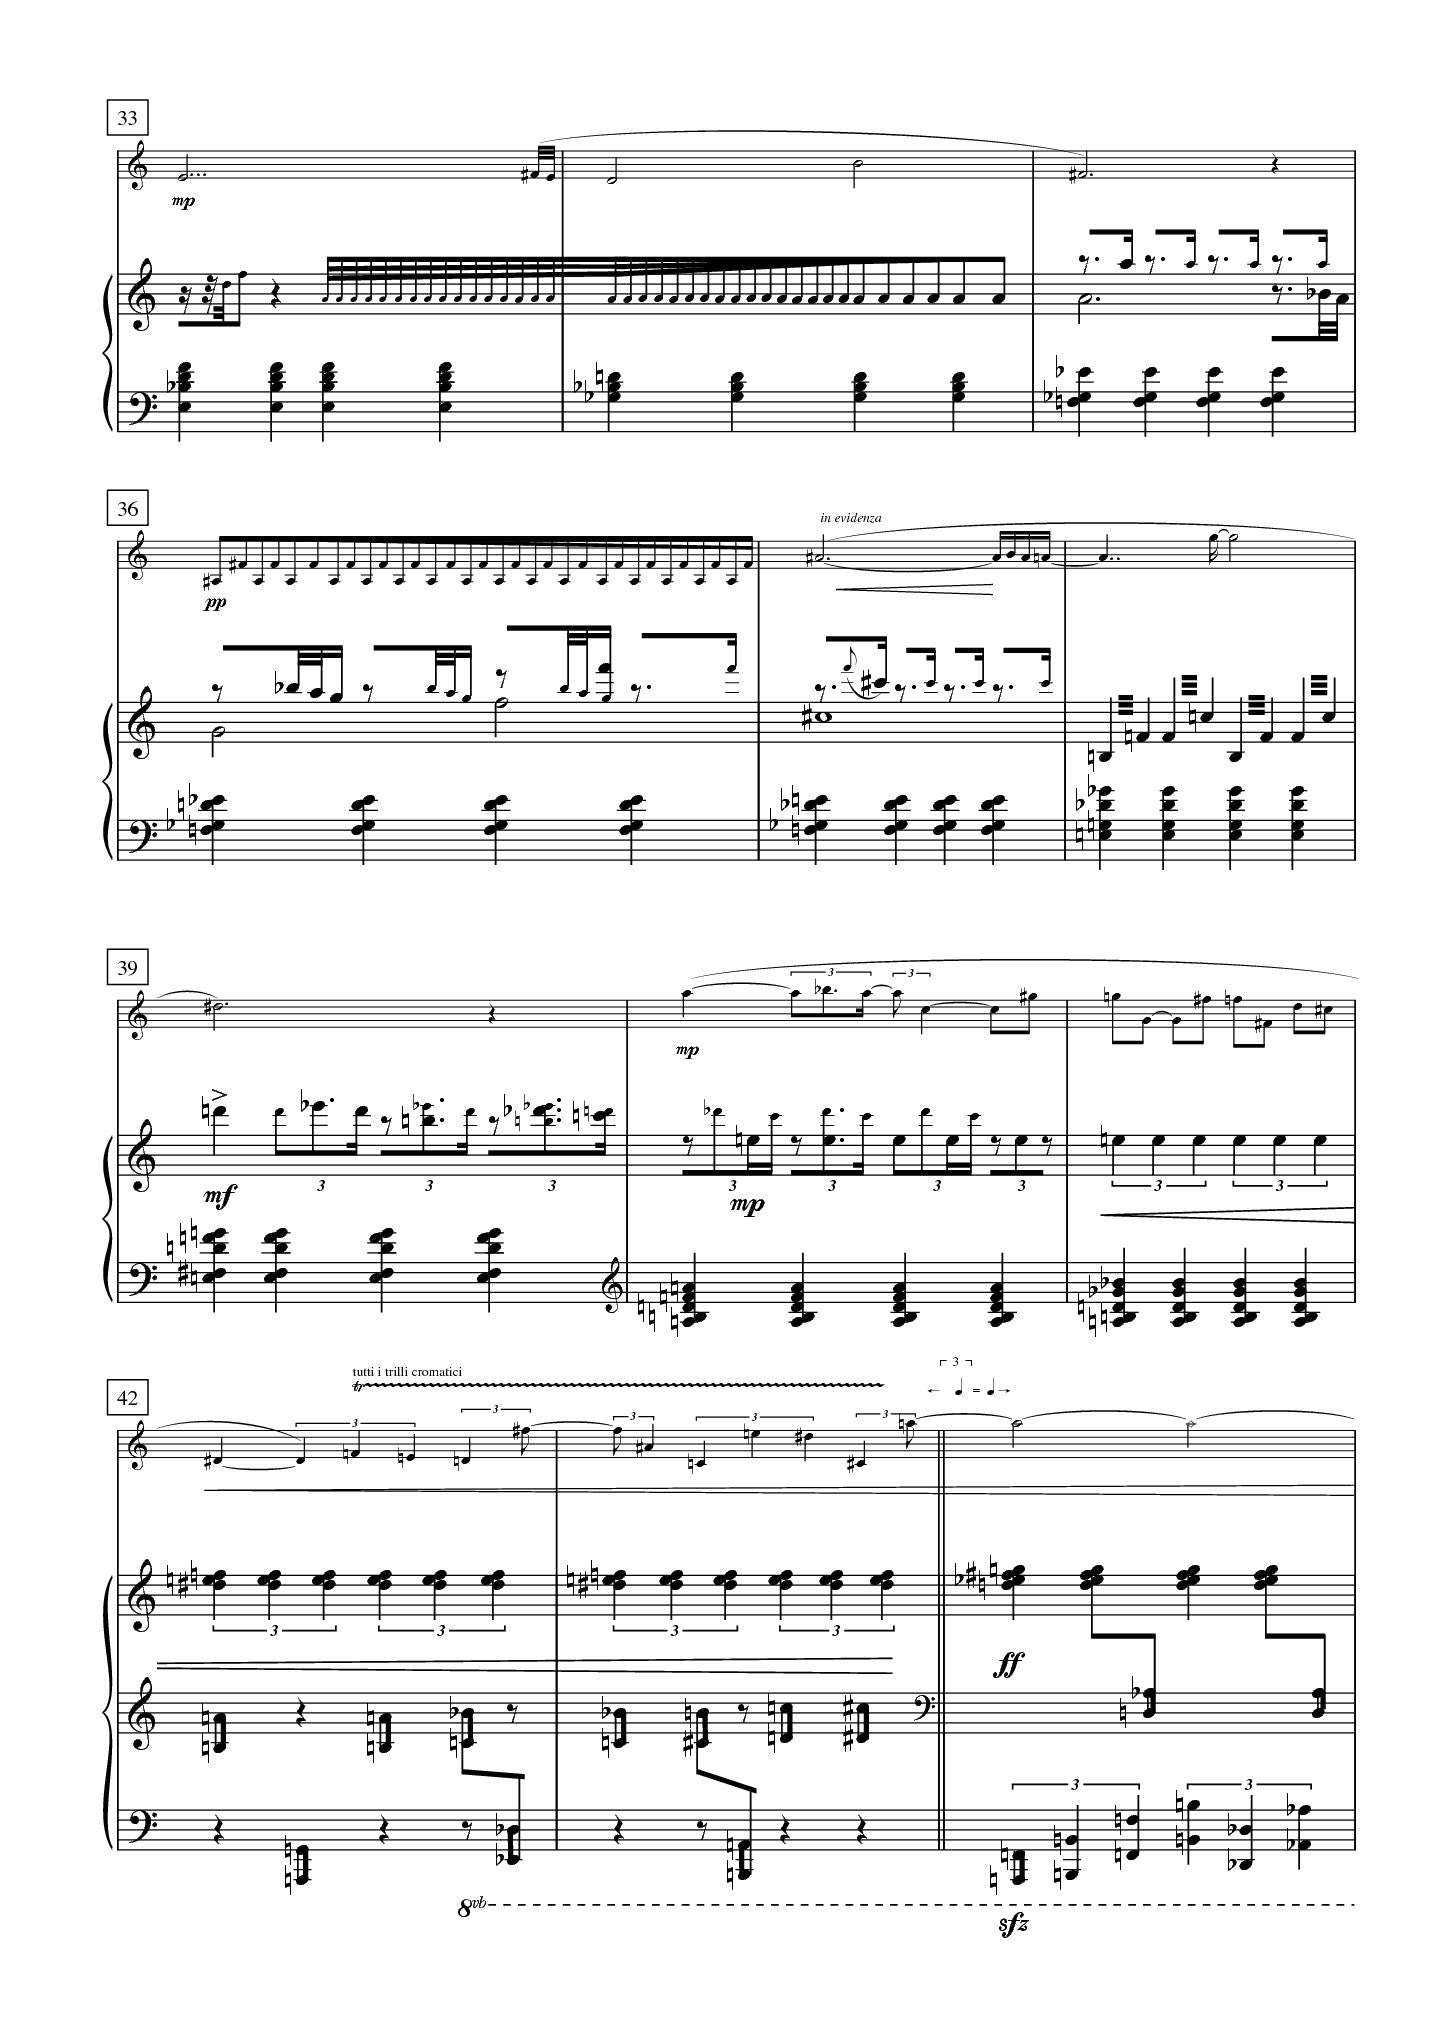 Bonnanno - Spettri for E-flat Clarinet and Piano